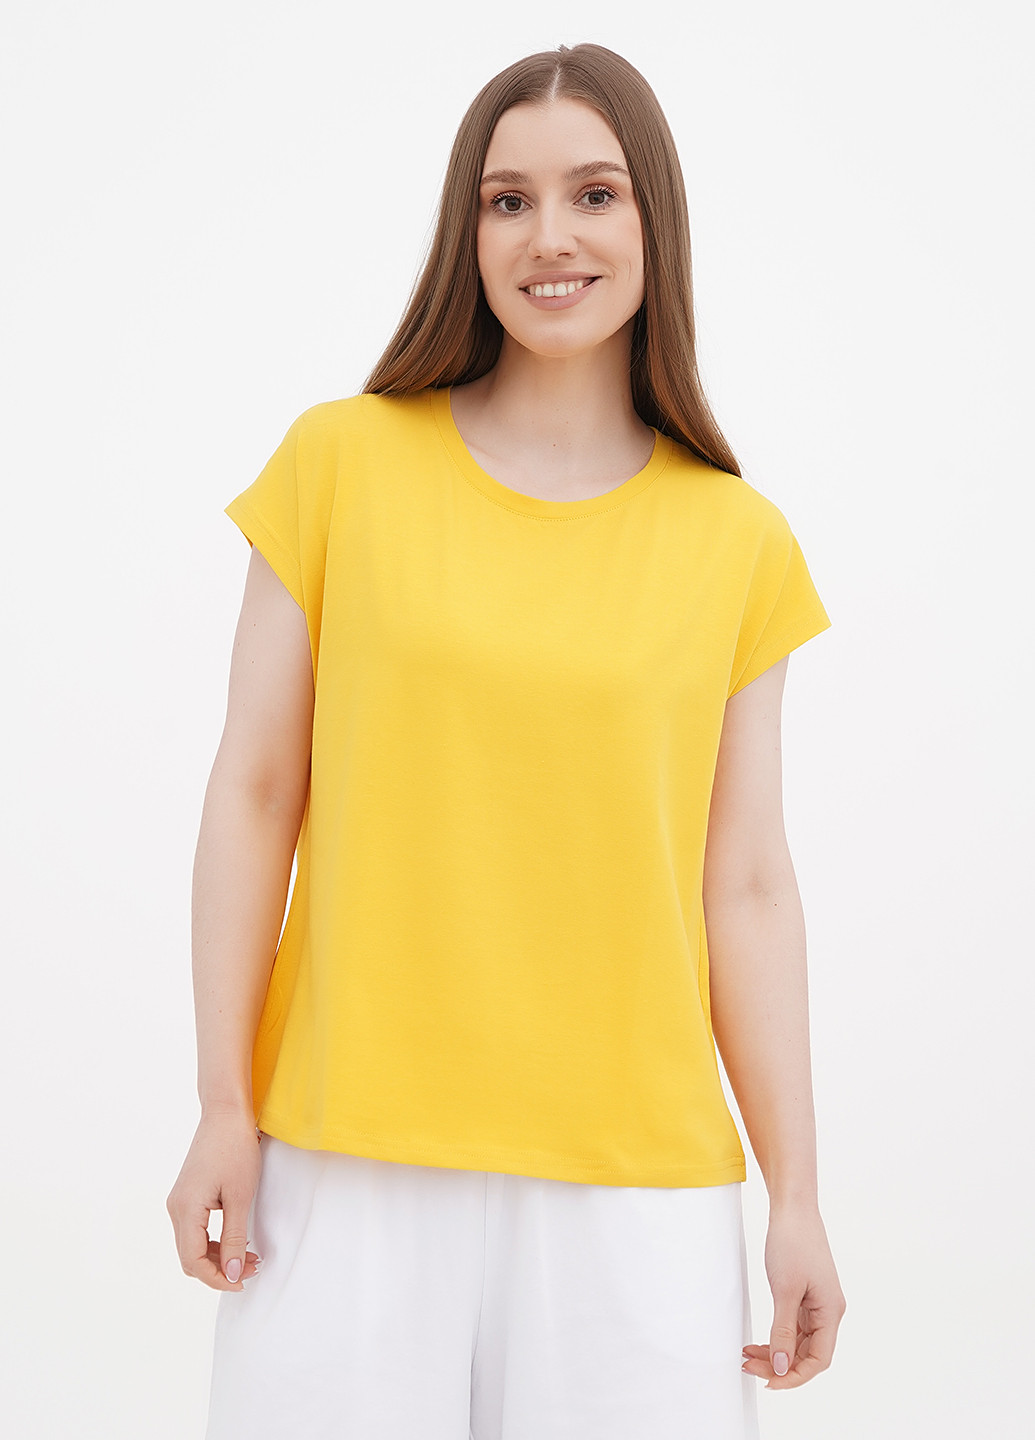 Жовта літня футболка Only Women